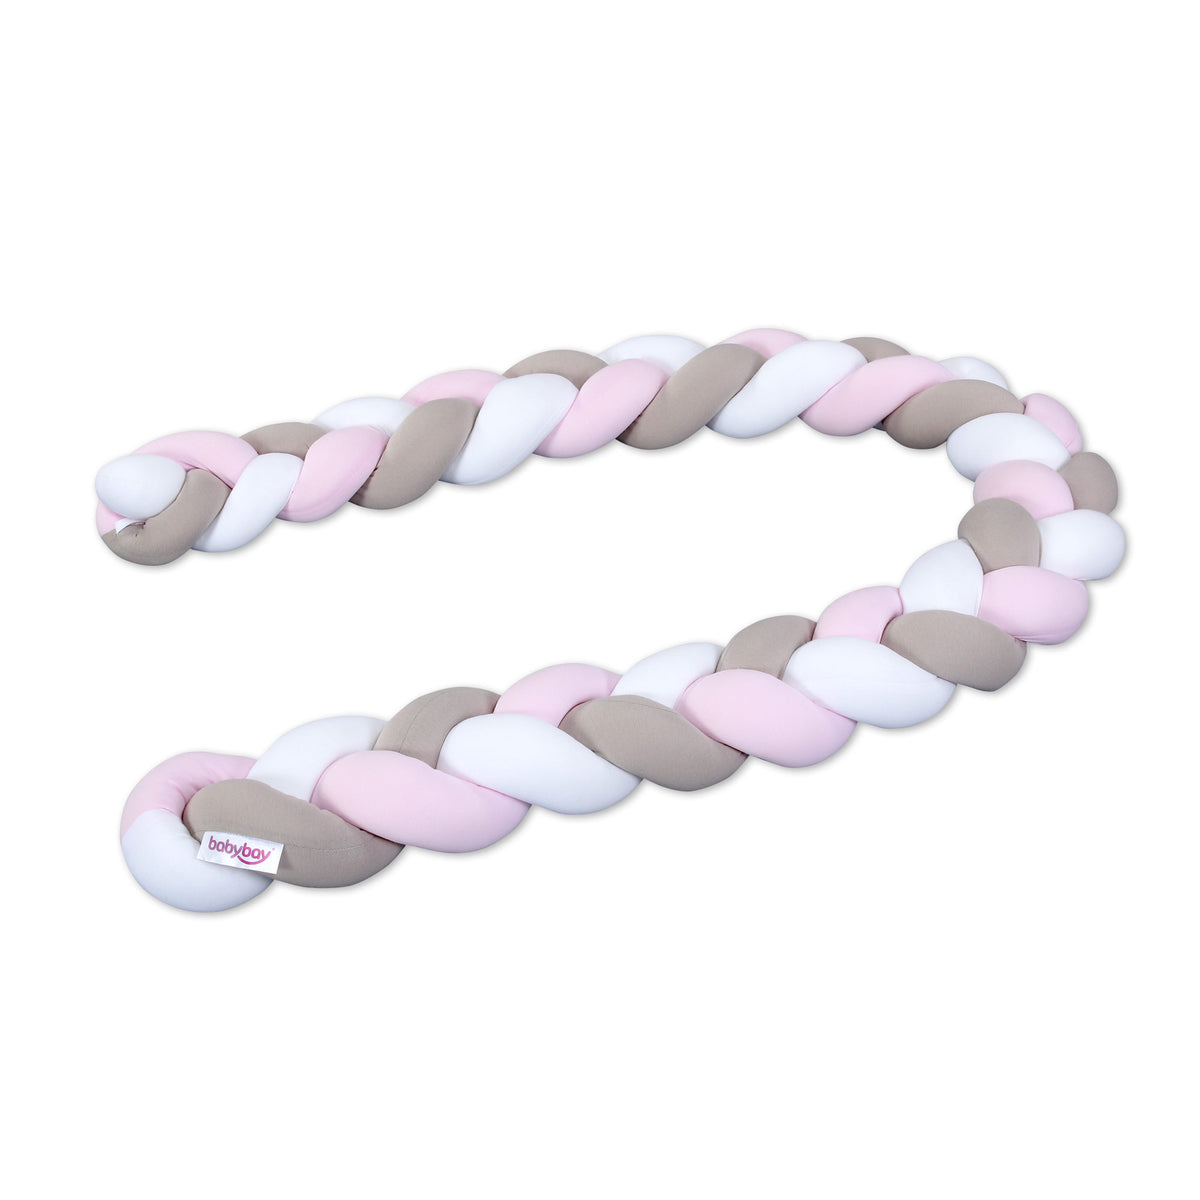 babybay Nestchenschlange geflochten weiss / beige / rosa